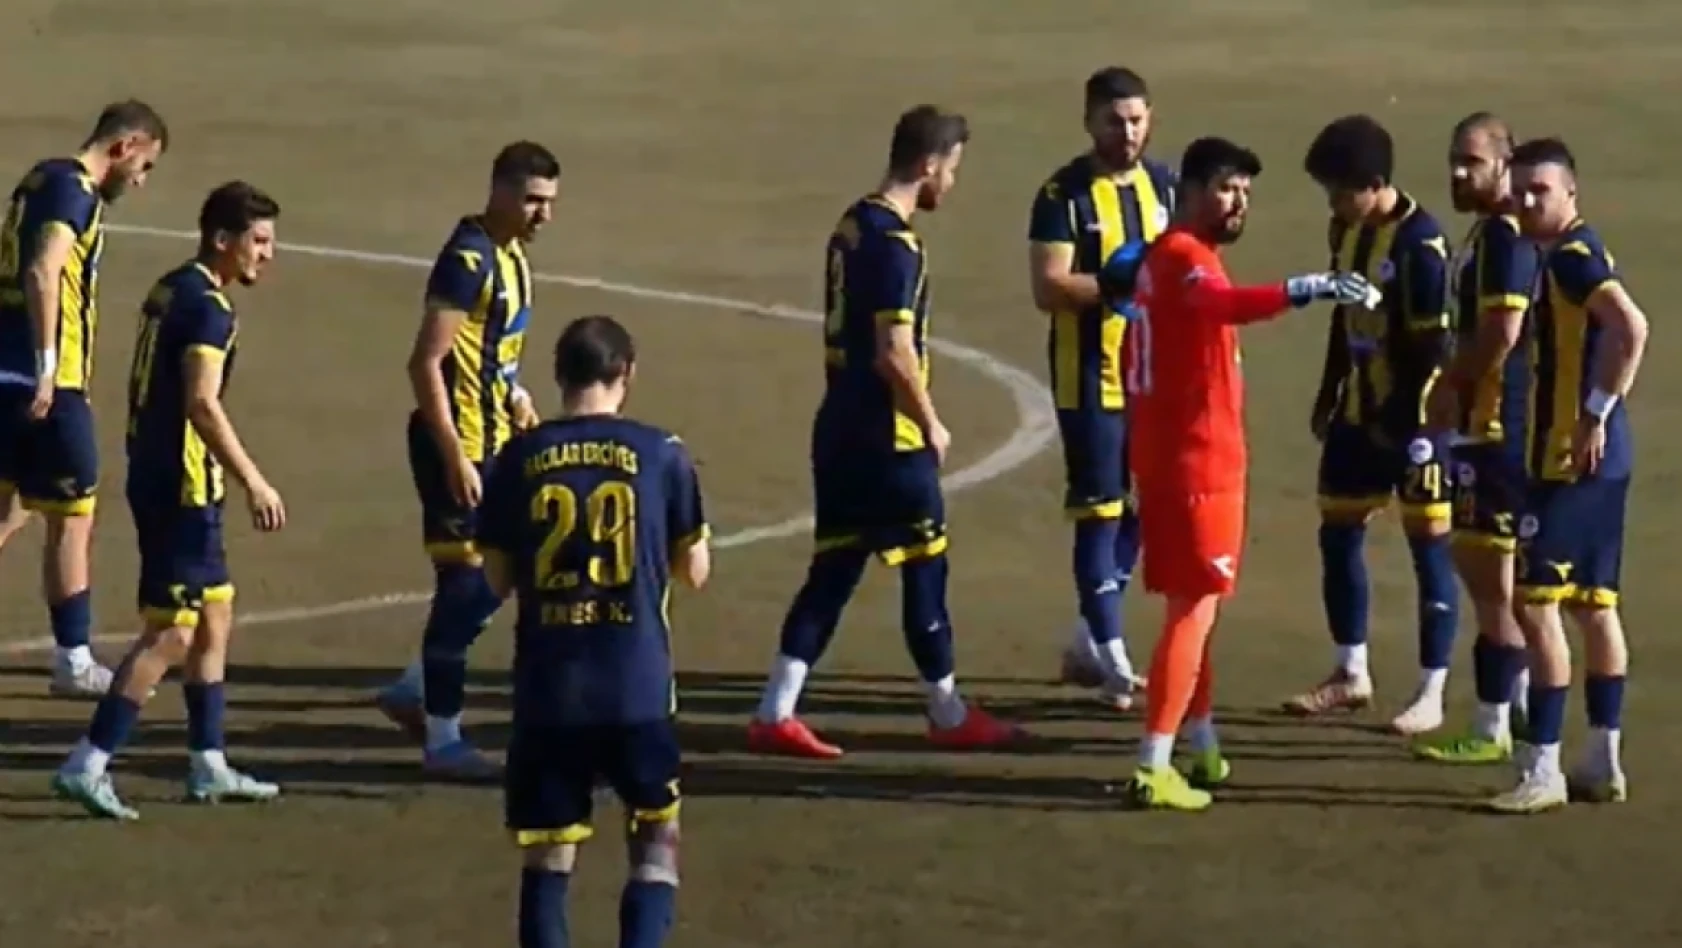 Hacılar Erciyesspor olaylı maçtan 1 puanla döndü! (2-2) BAL haberleri